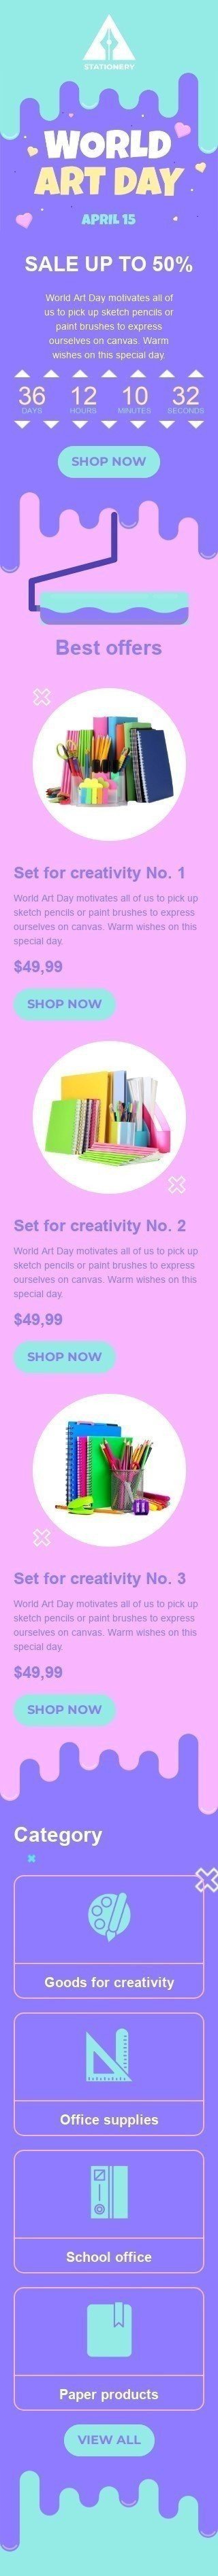 Шаблон письма к празднику Всемирный день искусства «Набор для творчества» для индустрии «Книги, Подарки, Канцтовары» мобильный вид